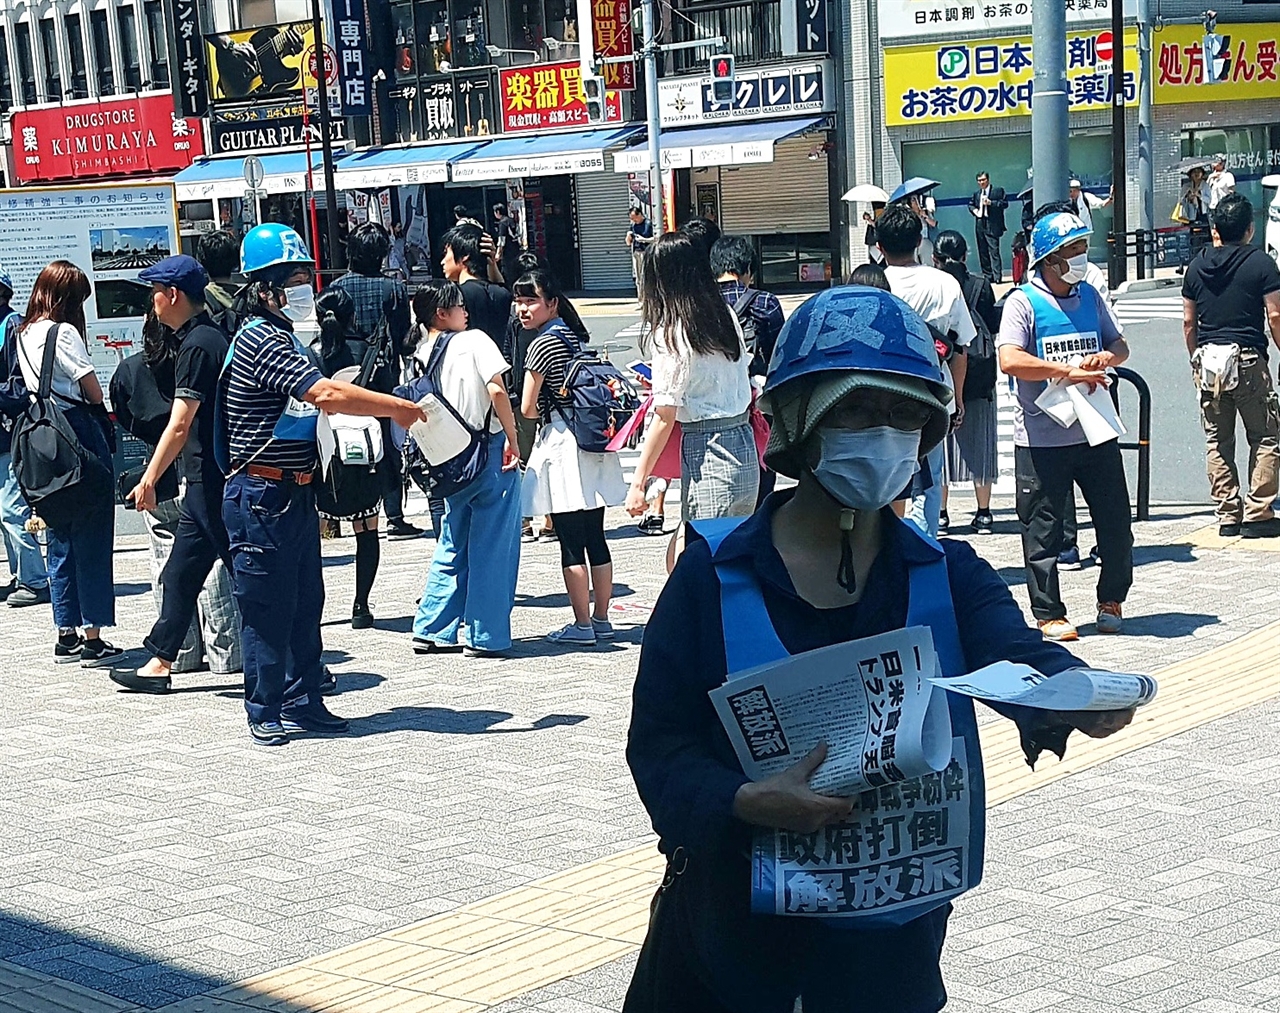 25일 오전 도쿄 오차노미즈바시역 입구에서 일본 시민들이 '미ㆍ일 정상회담'에 반대하는 선전물을 나눠주고 있다.